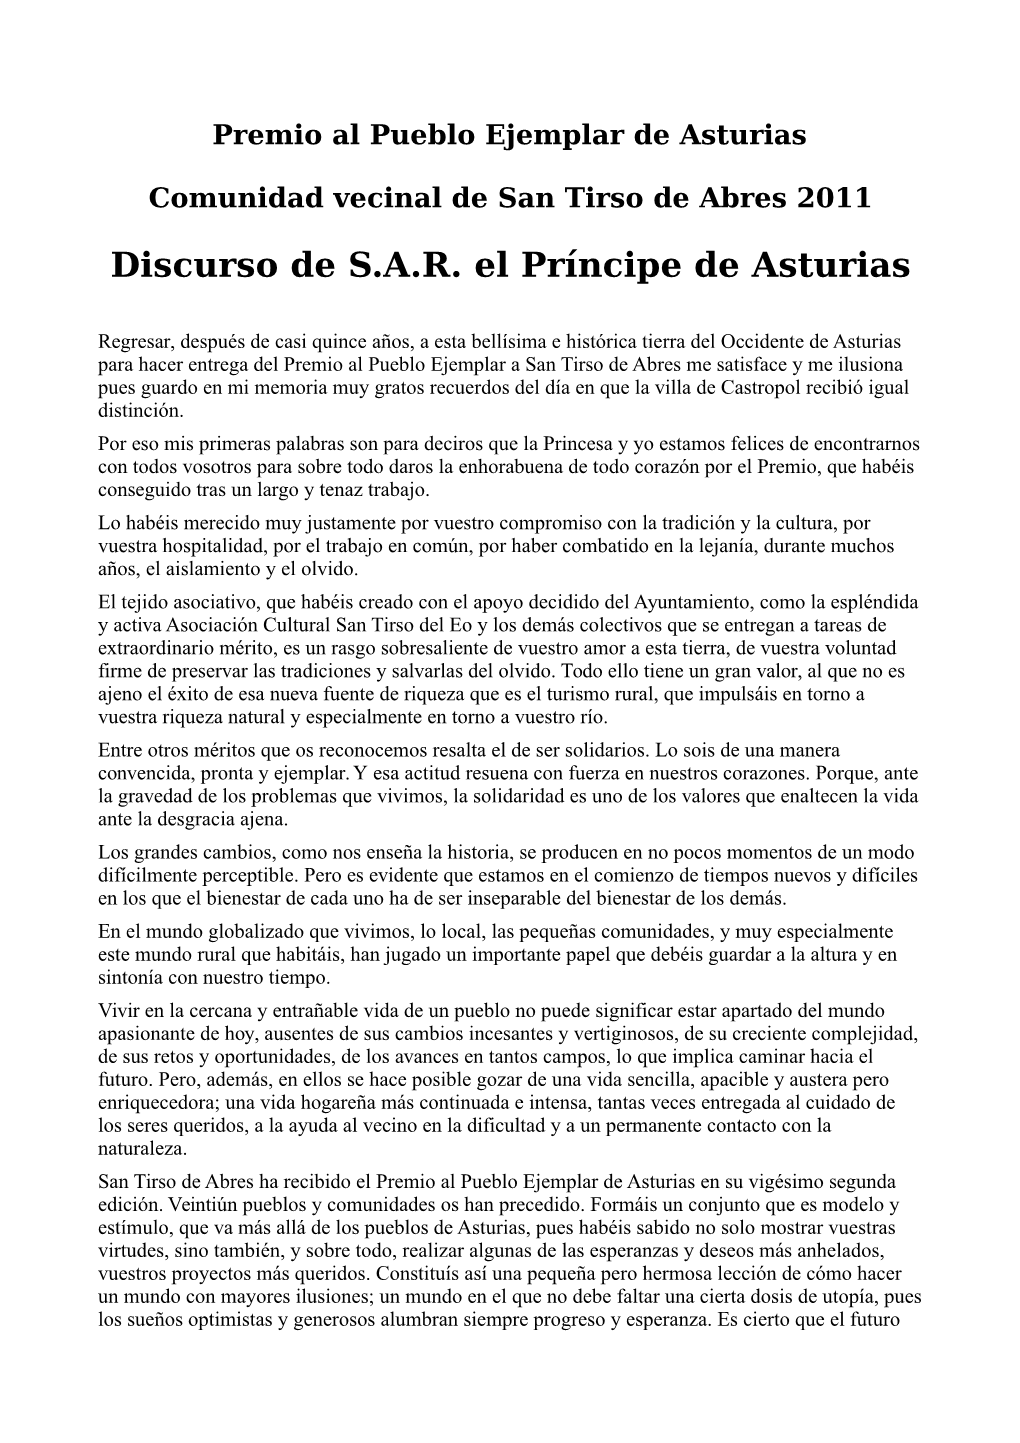 Discurso De S.A.R. El Príncipe De Asturias